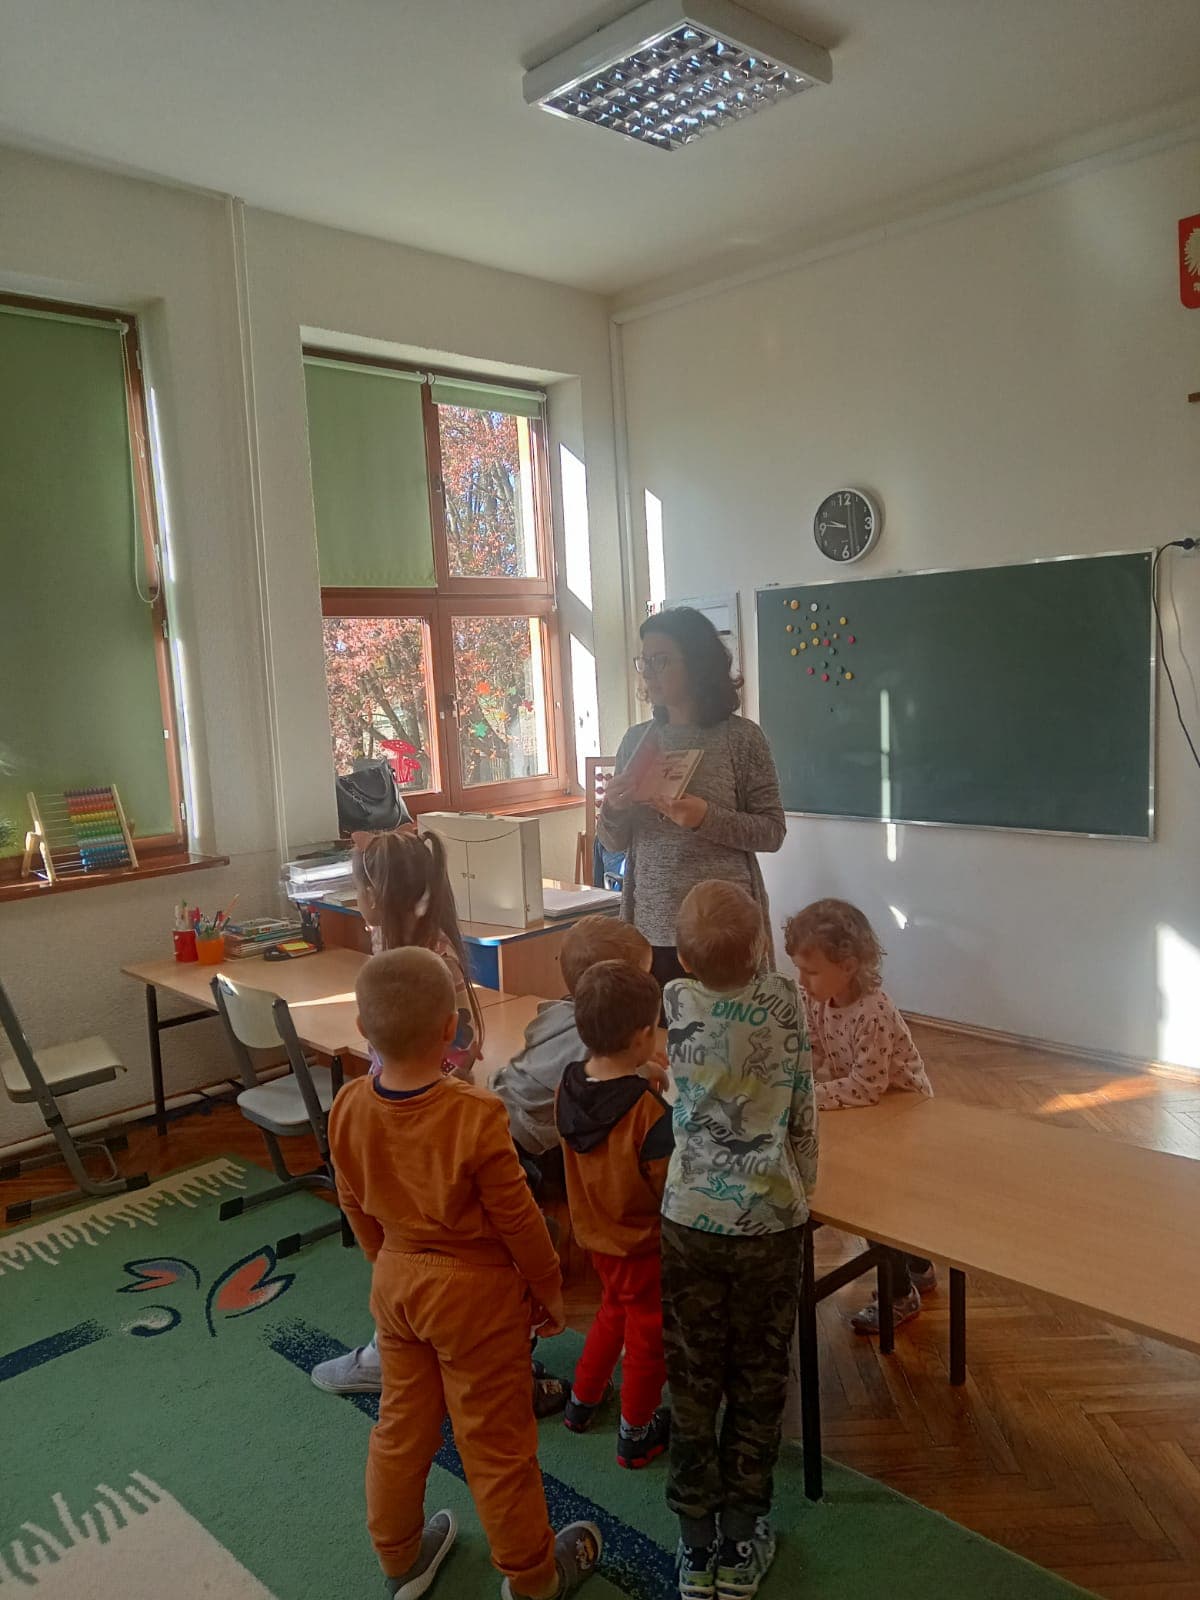 W klasie, małe dzieci stoją przy biurku i oglądają książeczkę prezentowaną przez kobietę. W tle zielona szkolna tablica.